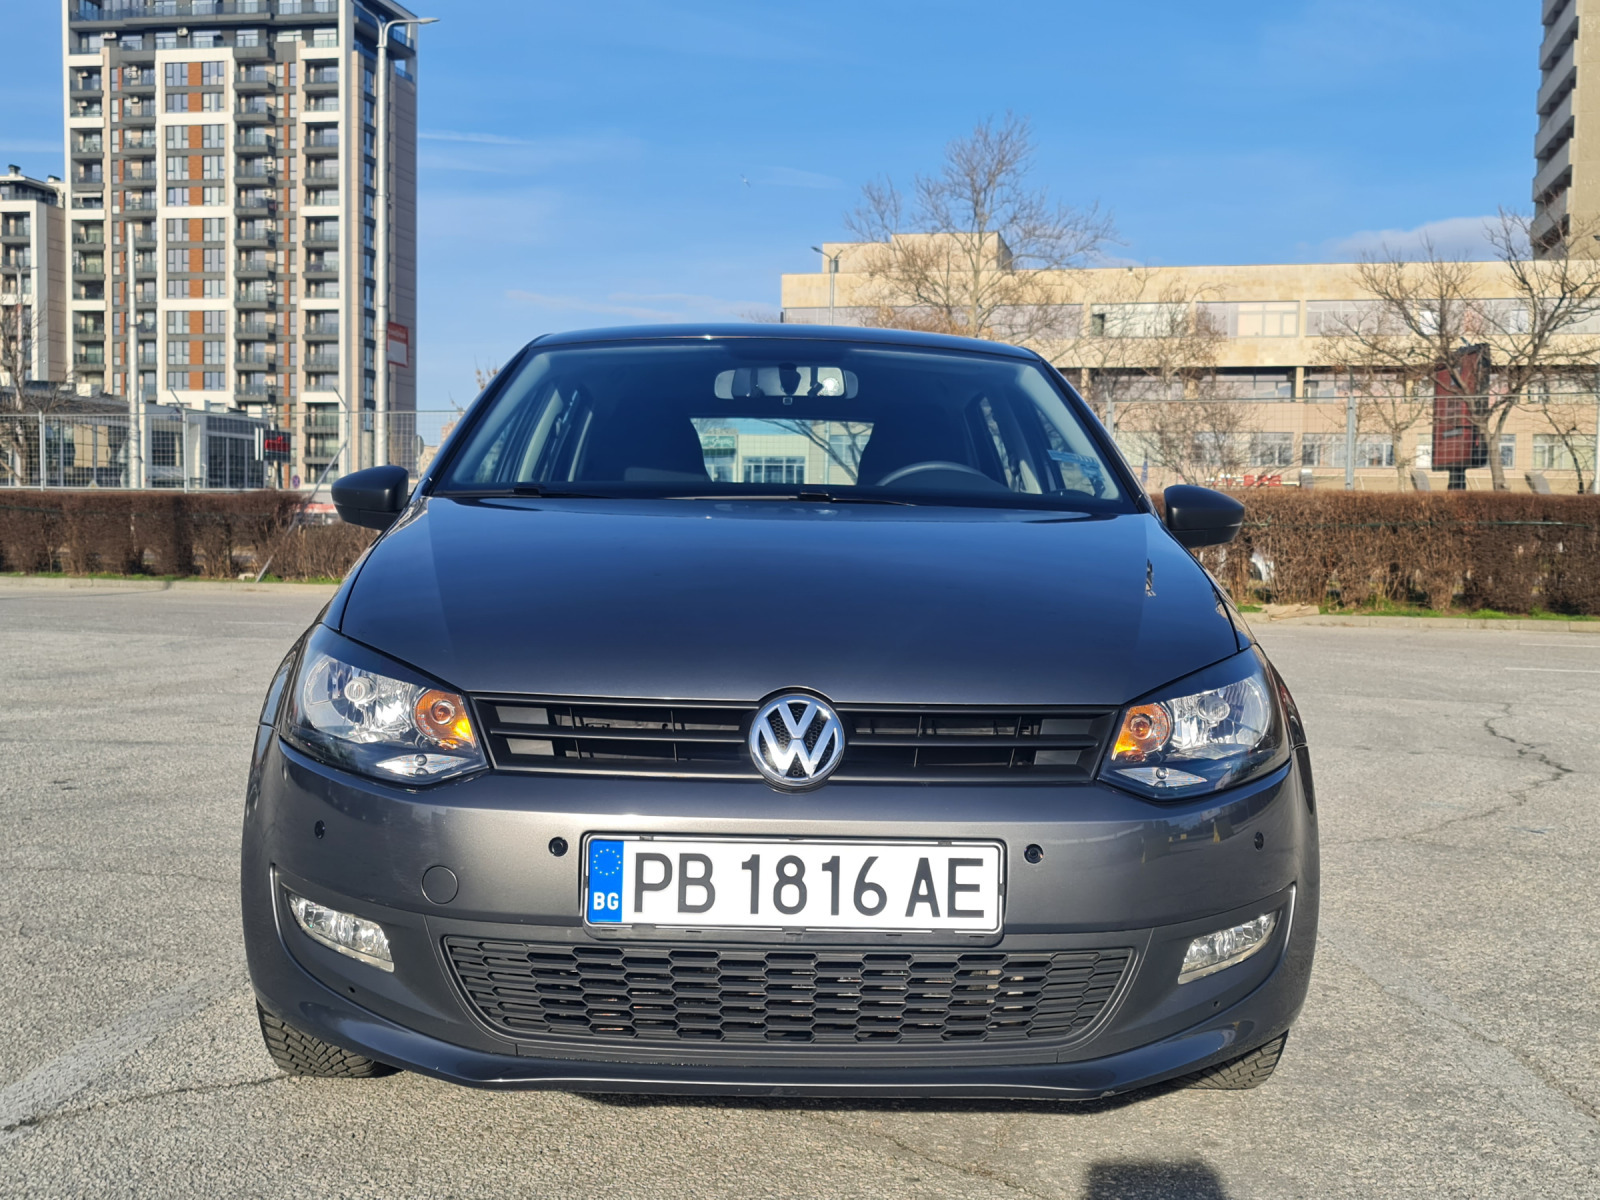 VW Polo 1.2, 85 000 km. - изображение 1